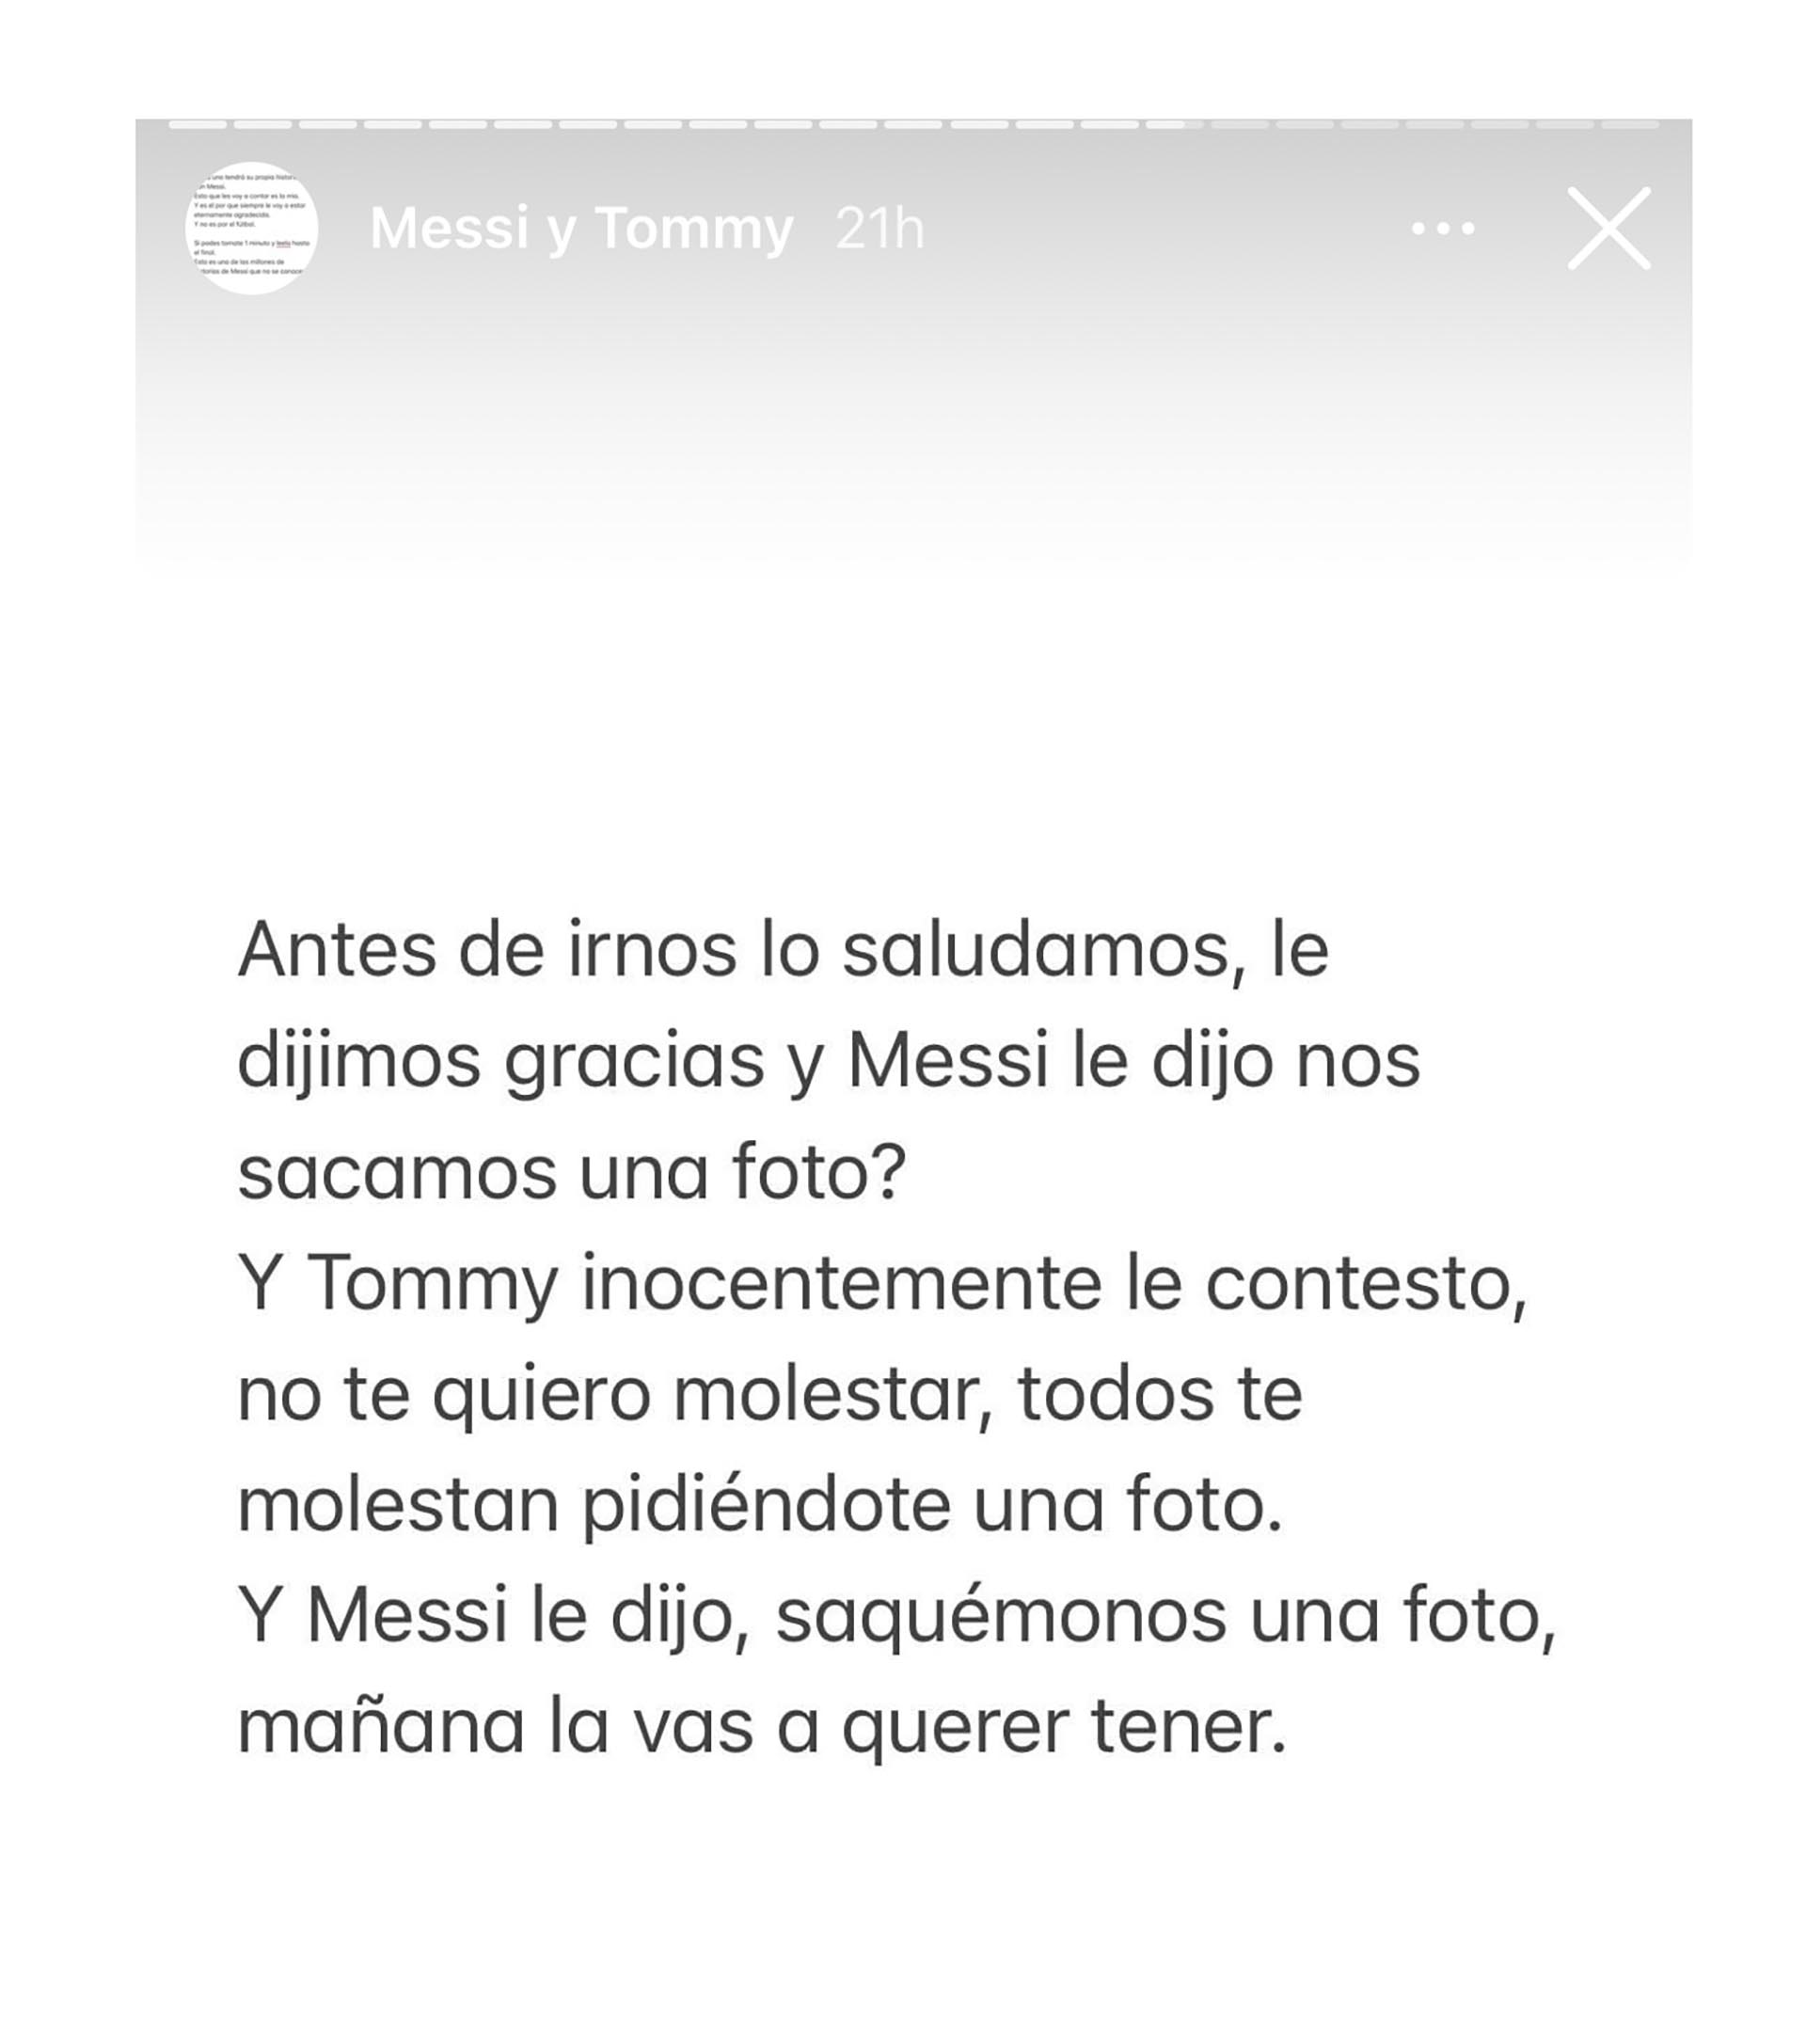 La mamá de Tommy contó que si no fuera por Messi, la foto de ese encuentro no existiría